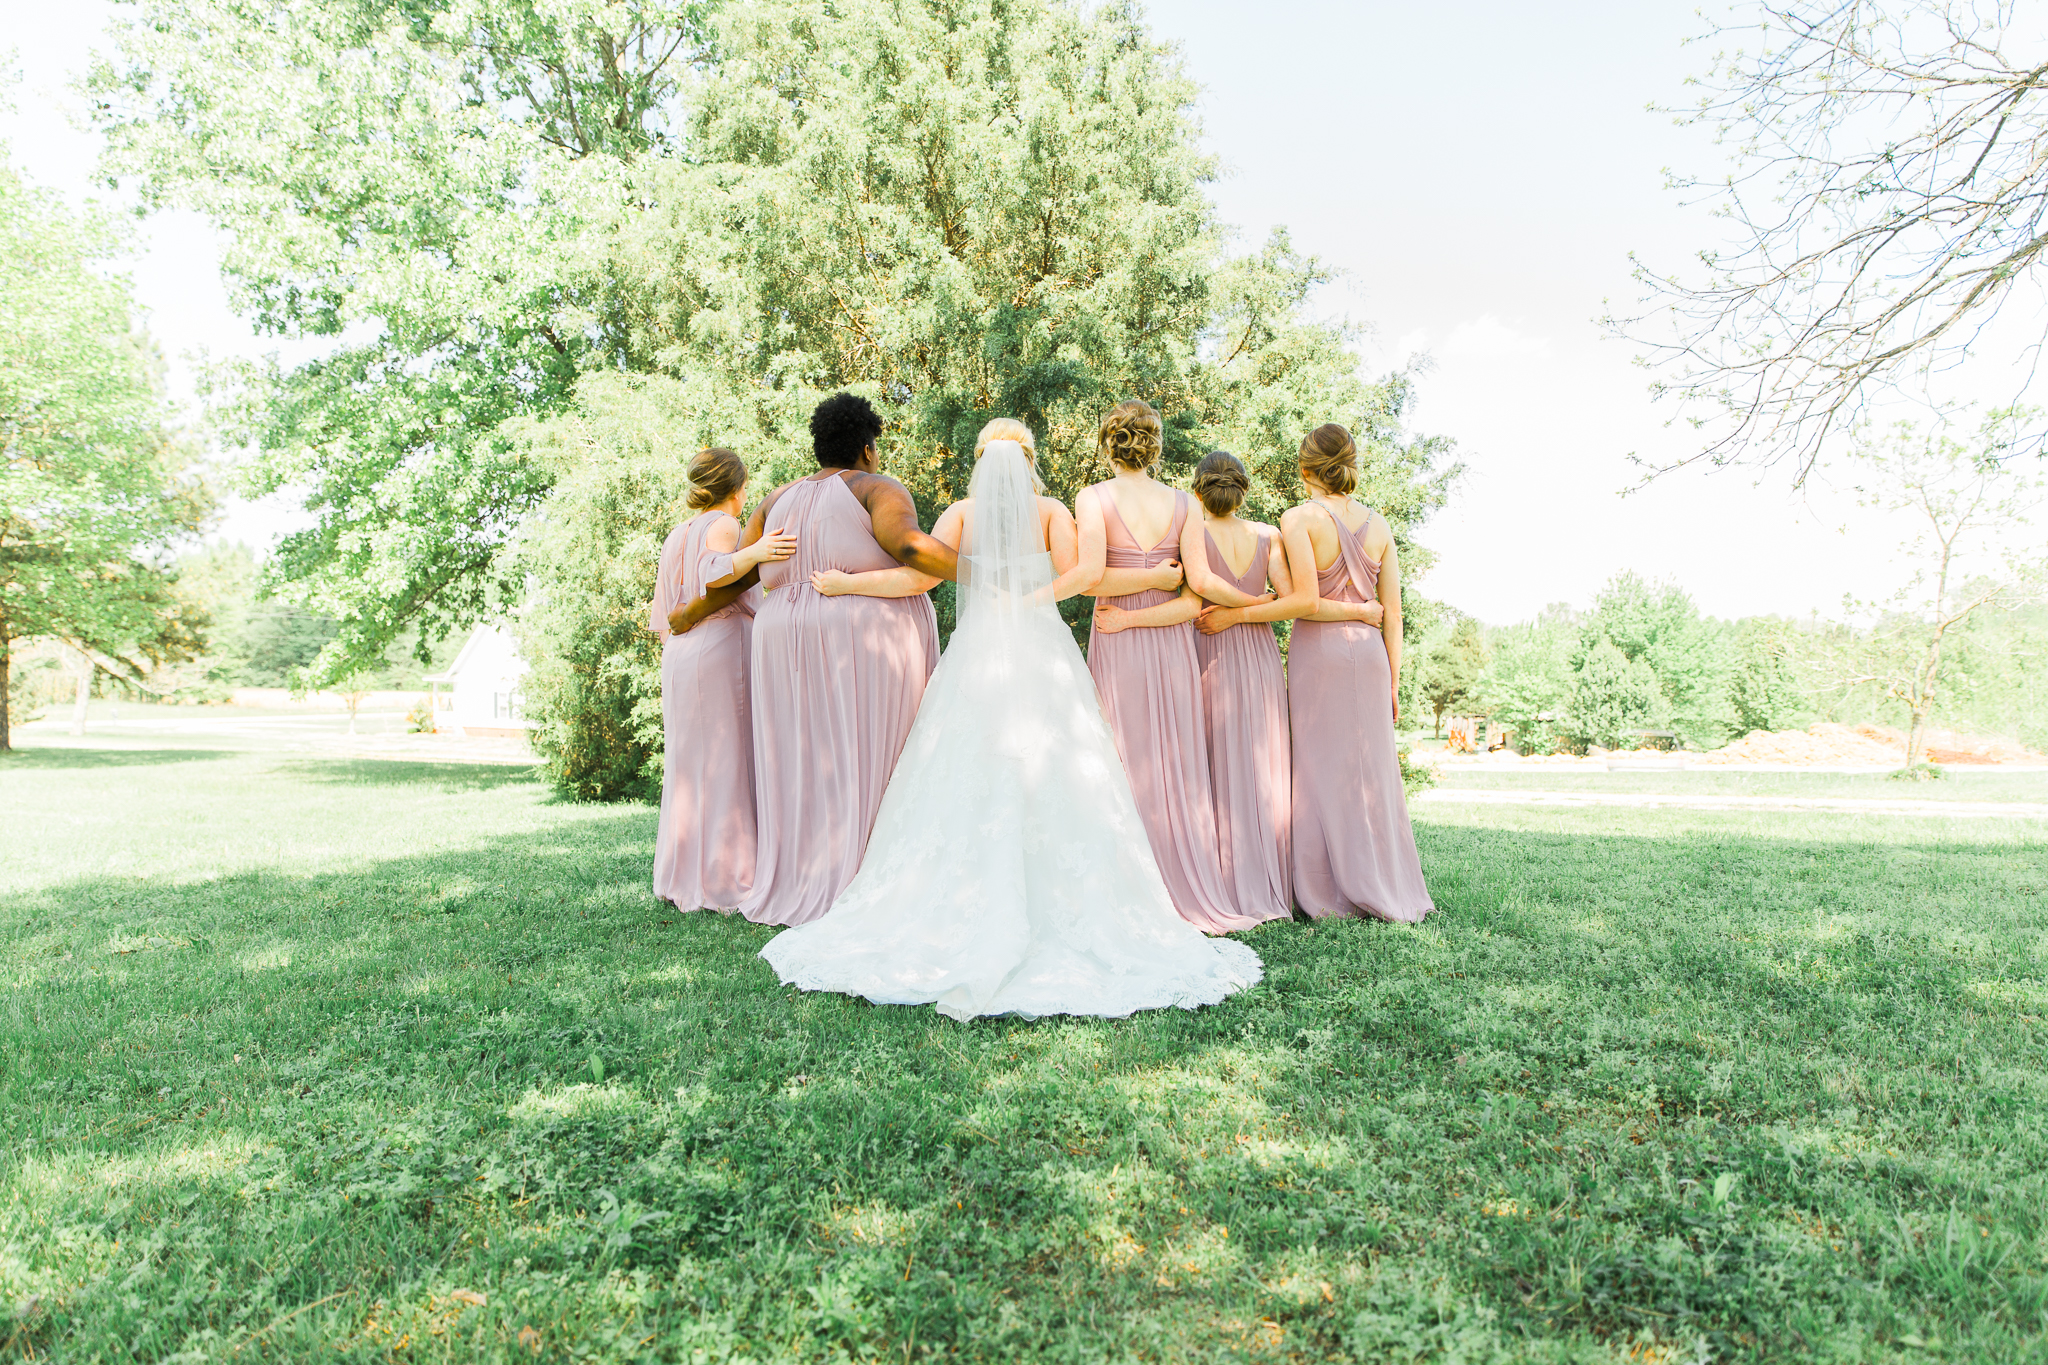 The Overturf Wedding | Backyard Wedding | Cinco de Mayo Wedding | Jonesboro Arkansas Photographer